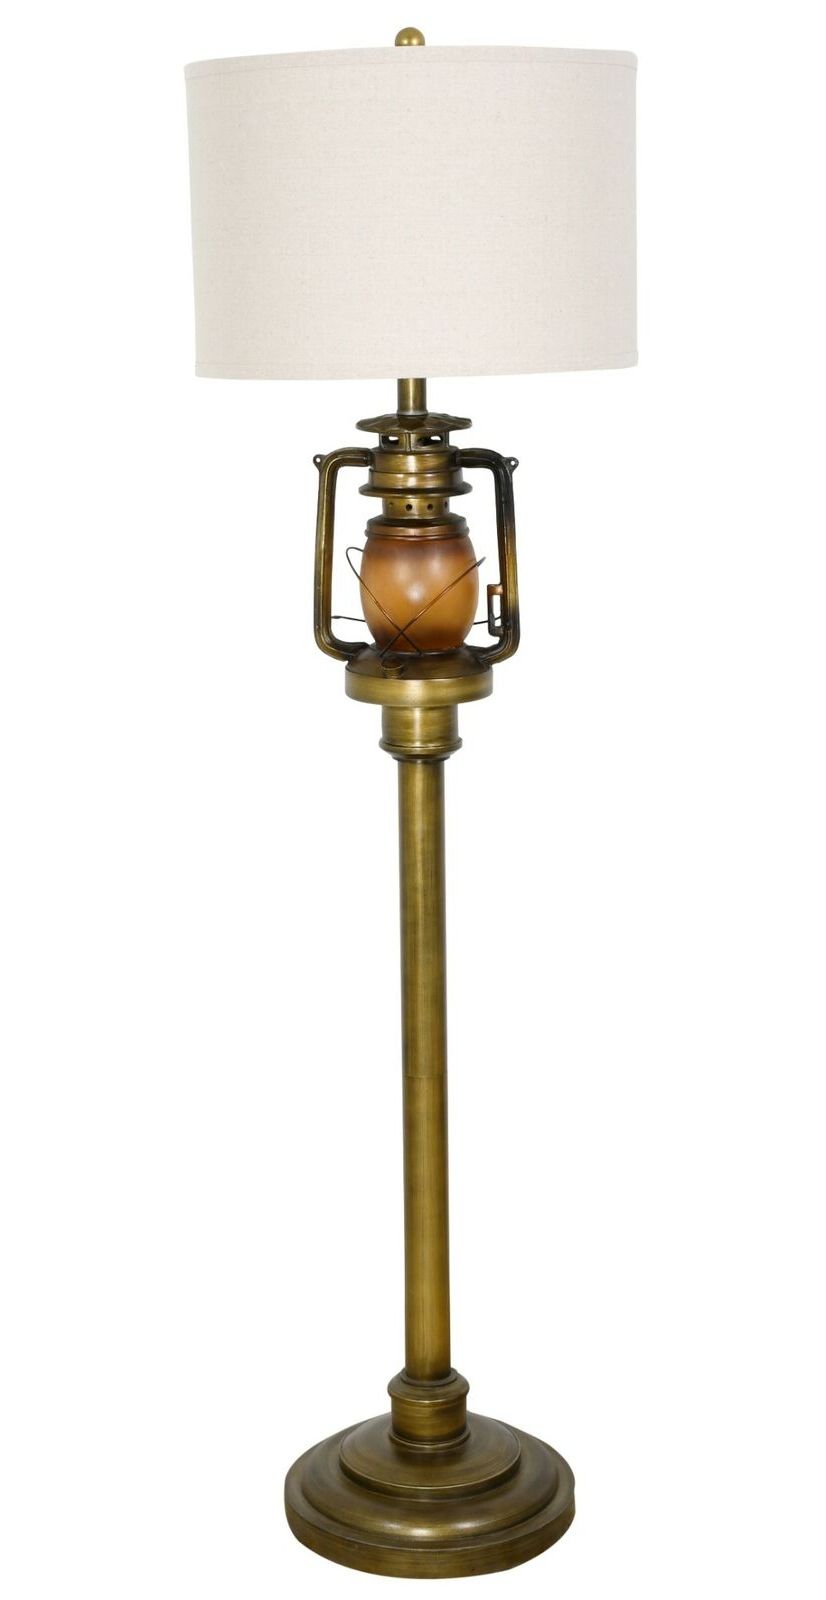 Ebay Regarding Lantern Standing Lamps (View 10 of 10)